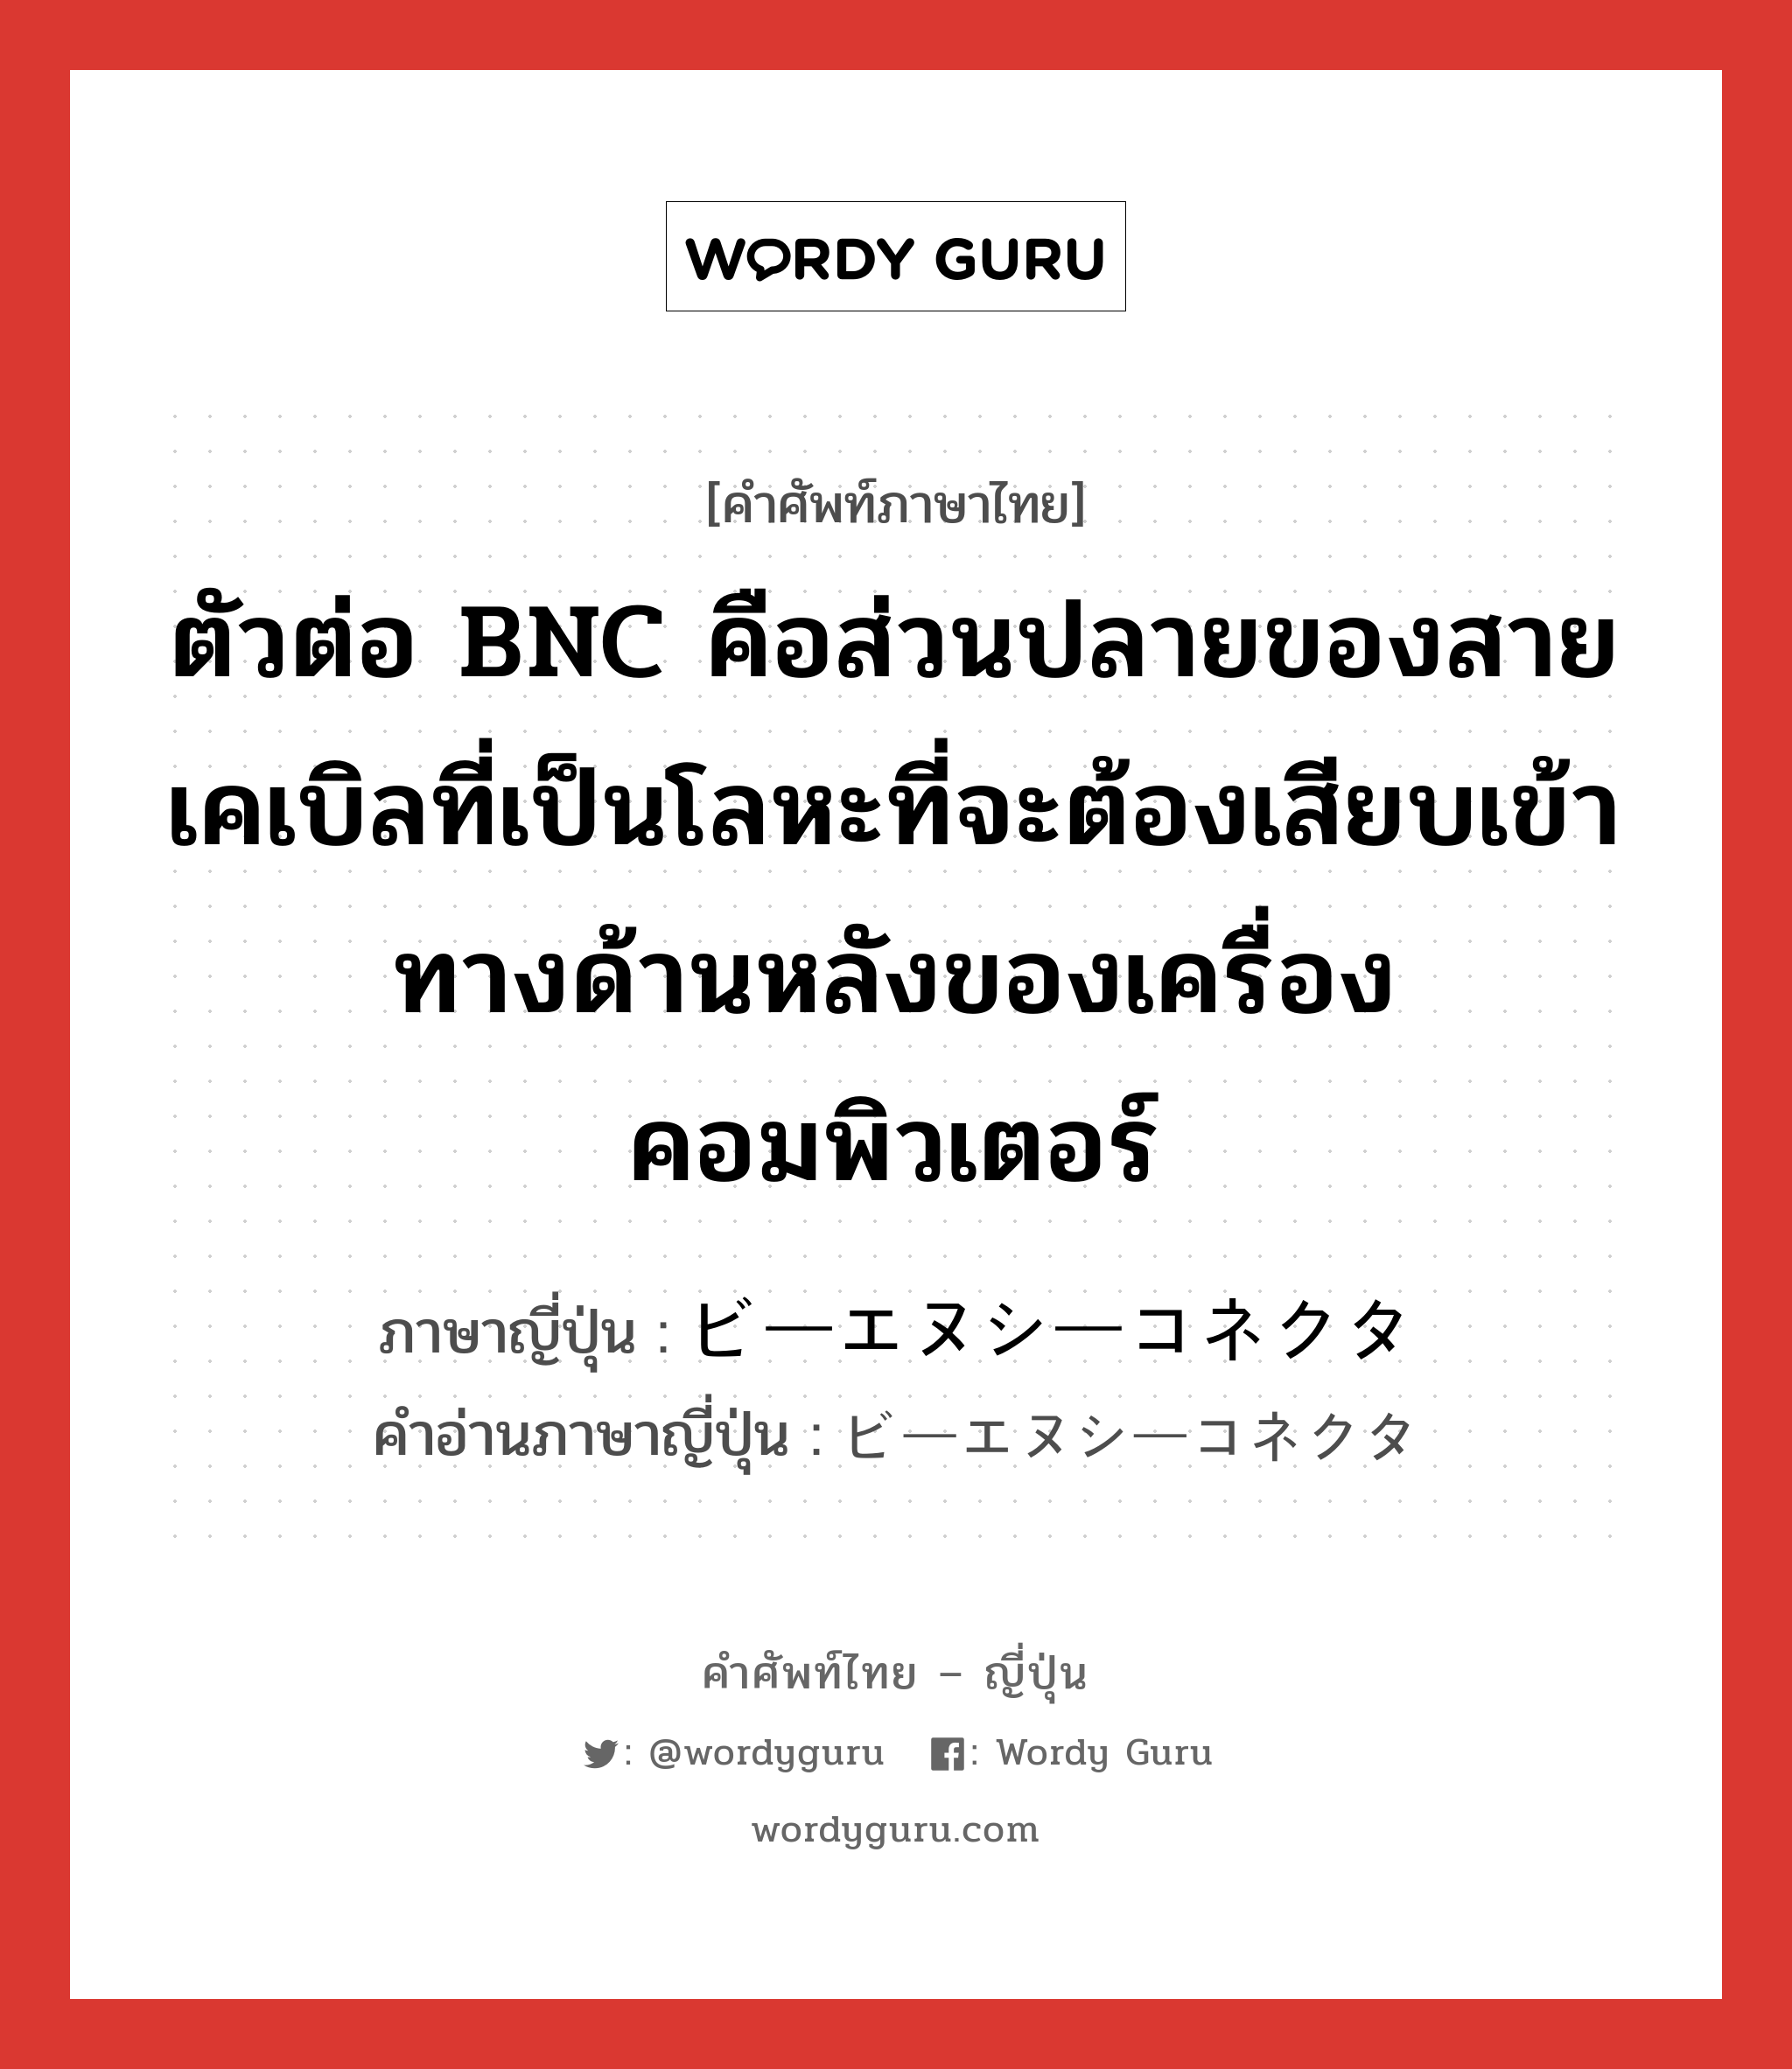 ตัวต่อ BNC คือส่วนปลายของสายเคเบิลที่เป็นโลหะที่จะต้องเสียบเข้าทางด้านหลังของเครื่องคอมพิวเตอร์ ภาษาญี่ปุ่นคืออะไร, คำศัพท์ภาษาไทย - ญี่ปุ่น ตัวต่อ BNC คือส่วนปลายของสายเคเบิลที่เป็นโลหะที่จะต้องเสียบเข้าทางด้านหลังของเครื่องคอมพิวเตอร์ ภาษาญี่ปุ่น ビーエヌシーコネクタ คำอ่านภาษาญี่ปุ่น ビーエヌシーコネクタ หมวด n หมวด n